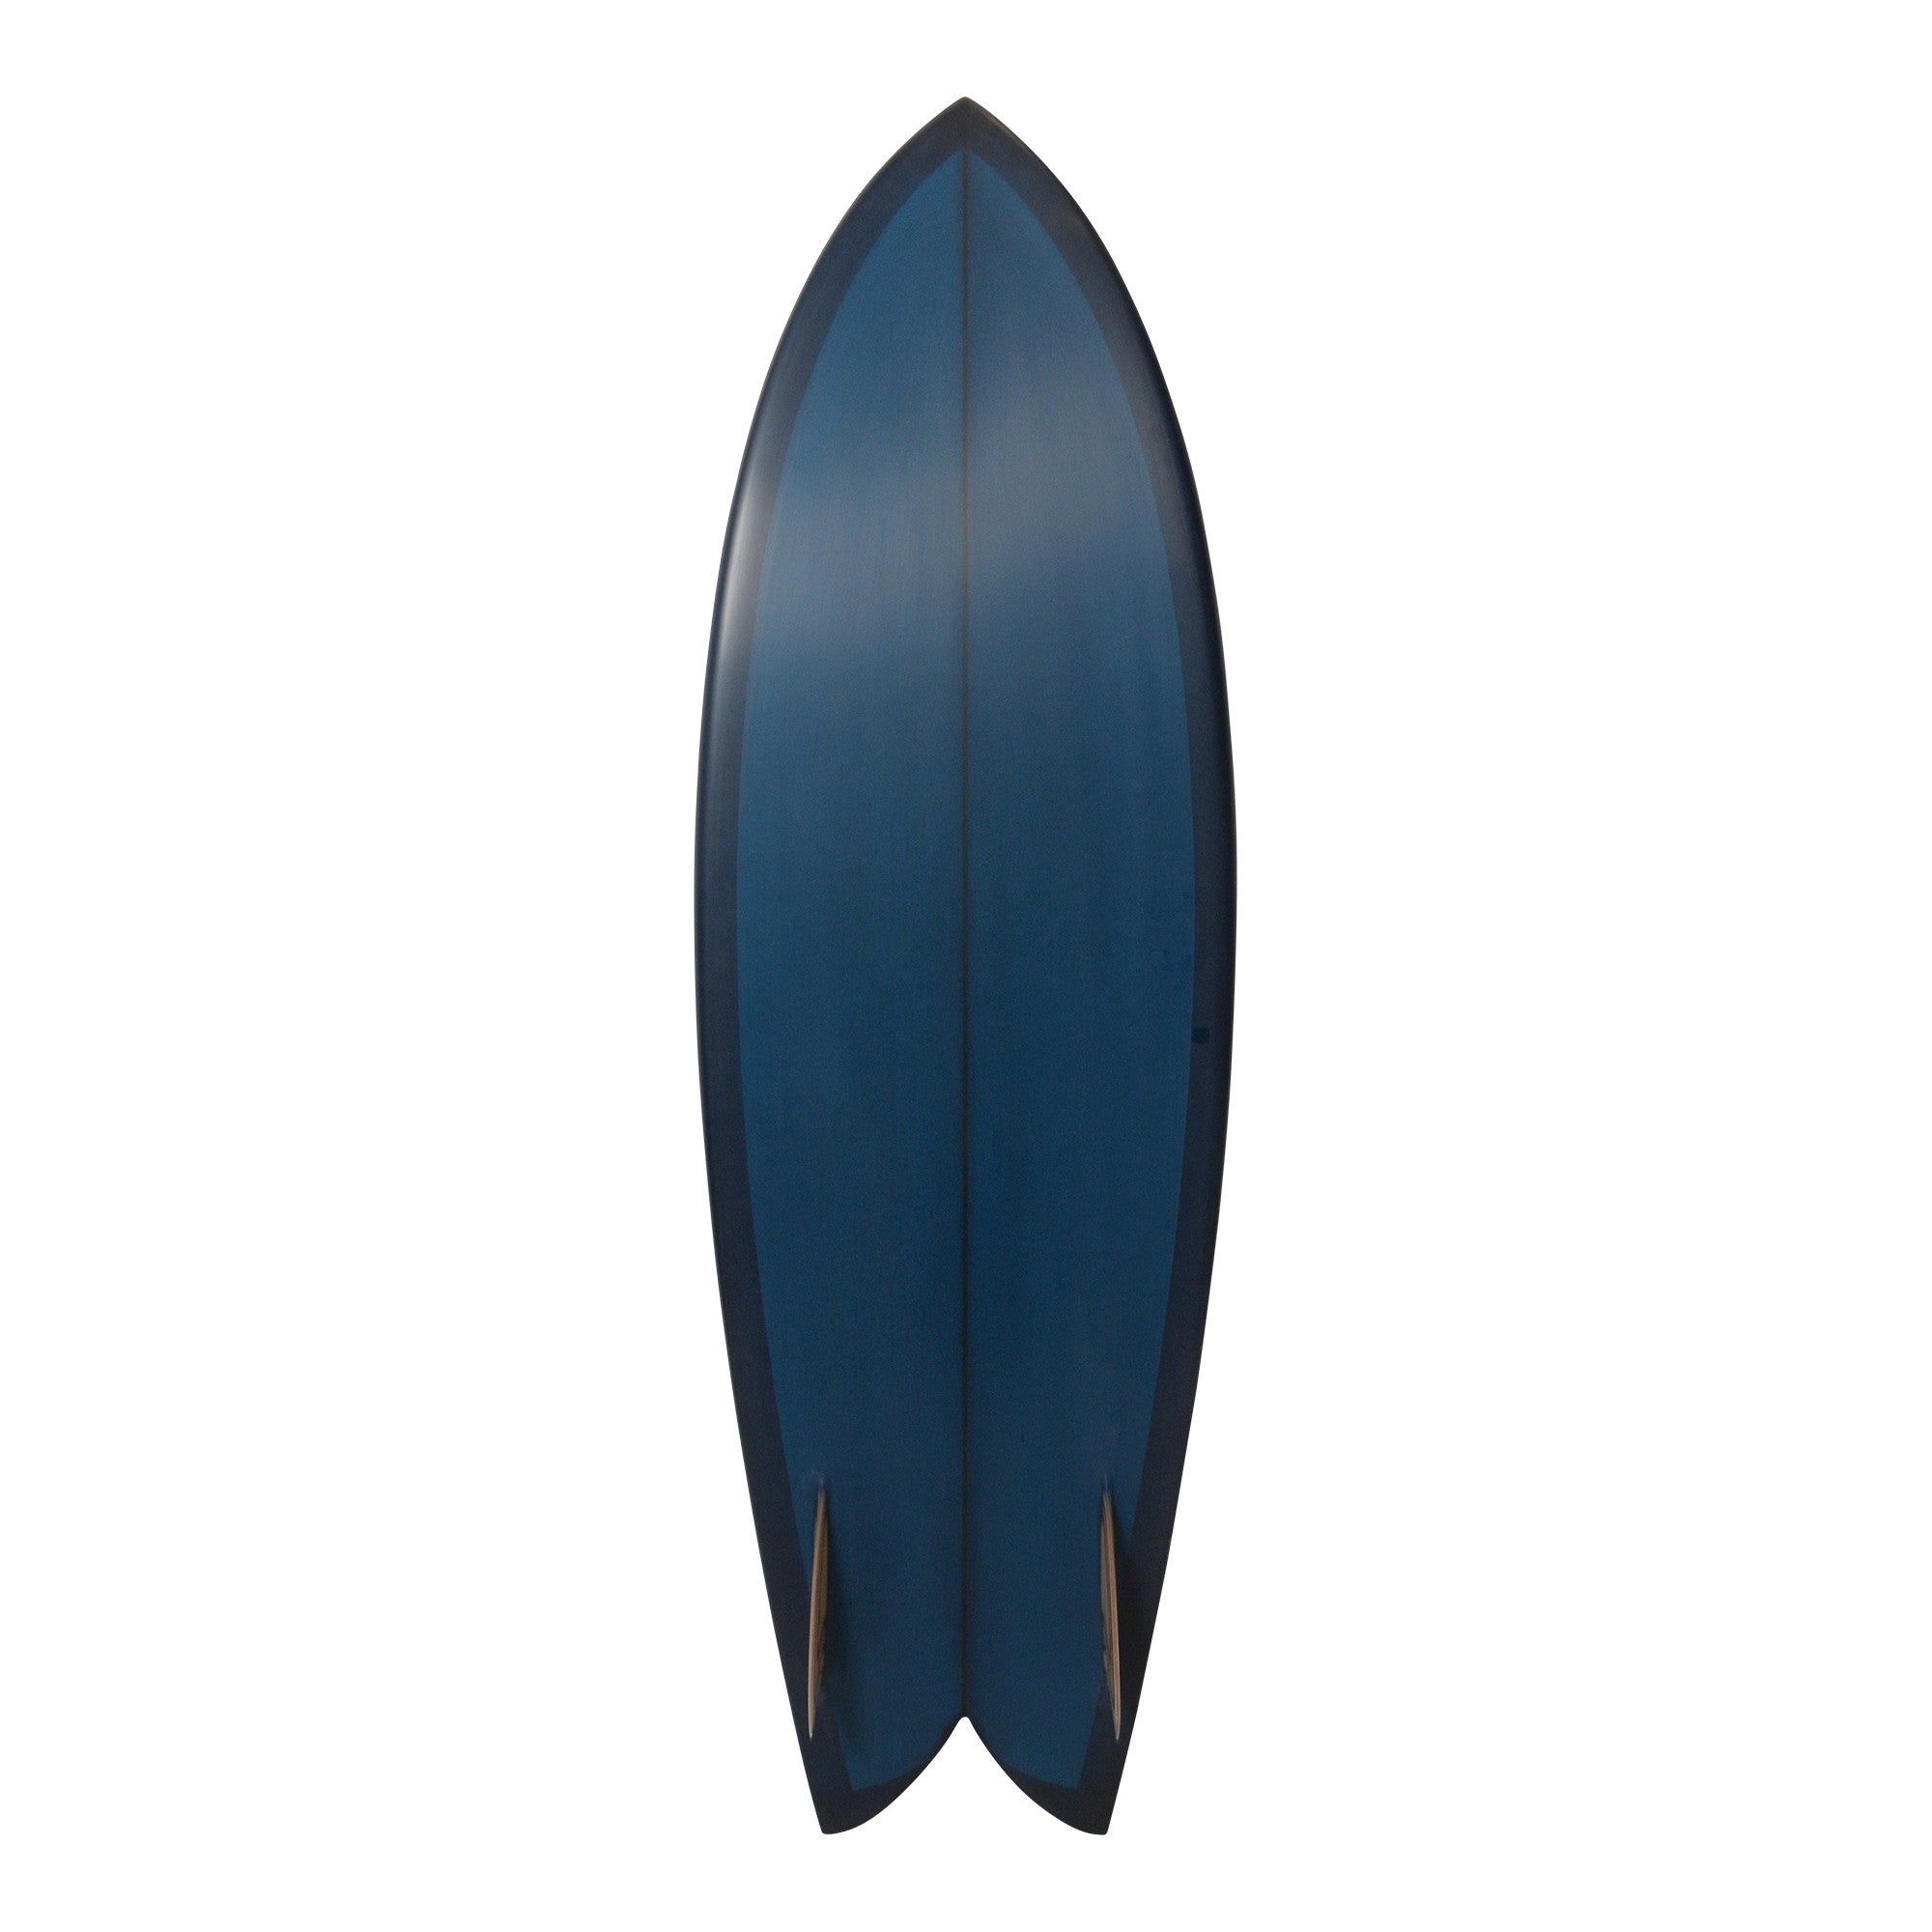 Tablas de surf ELMORE - Fish 5'8 (PU) Vidrio con aletas - Azul marino